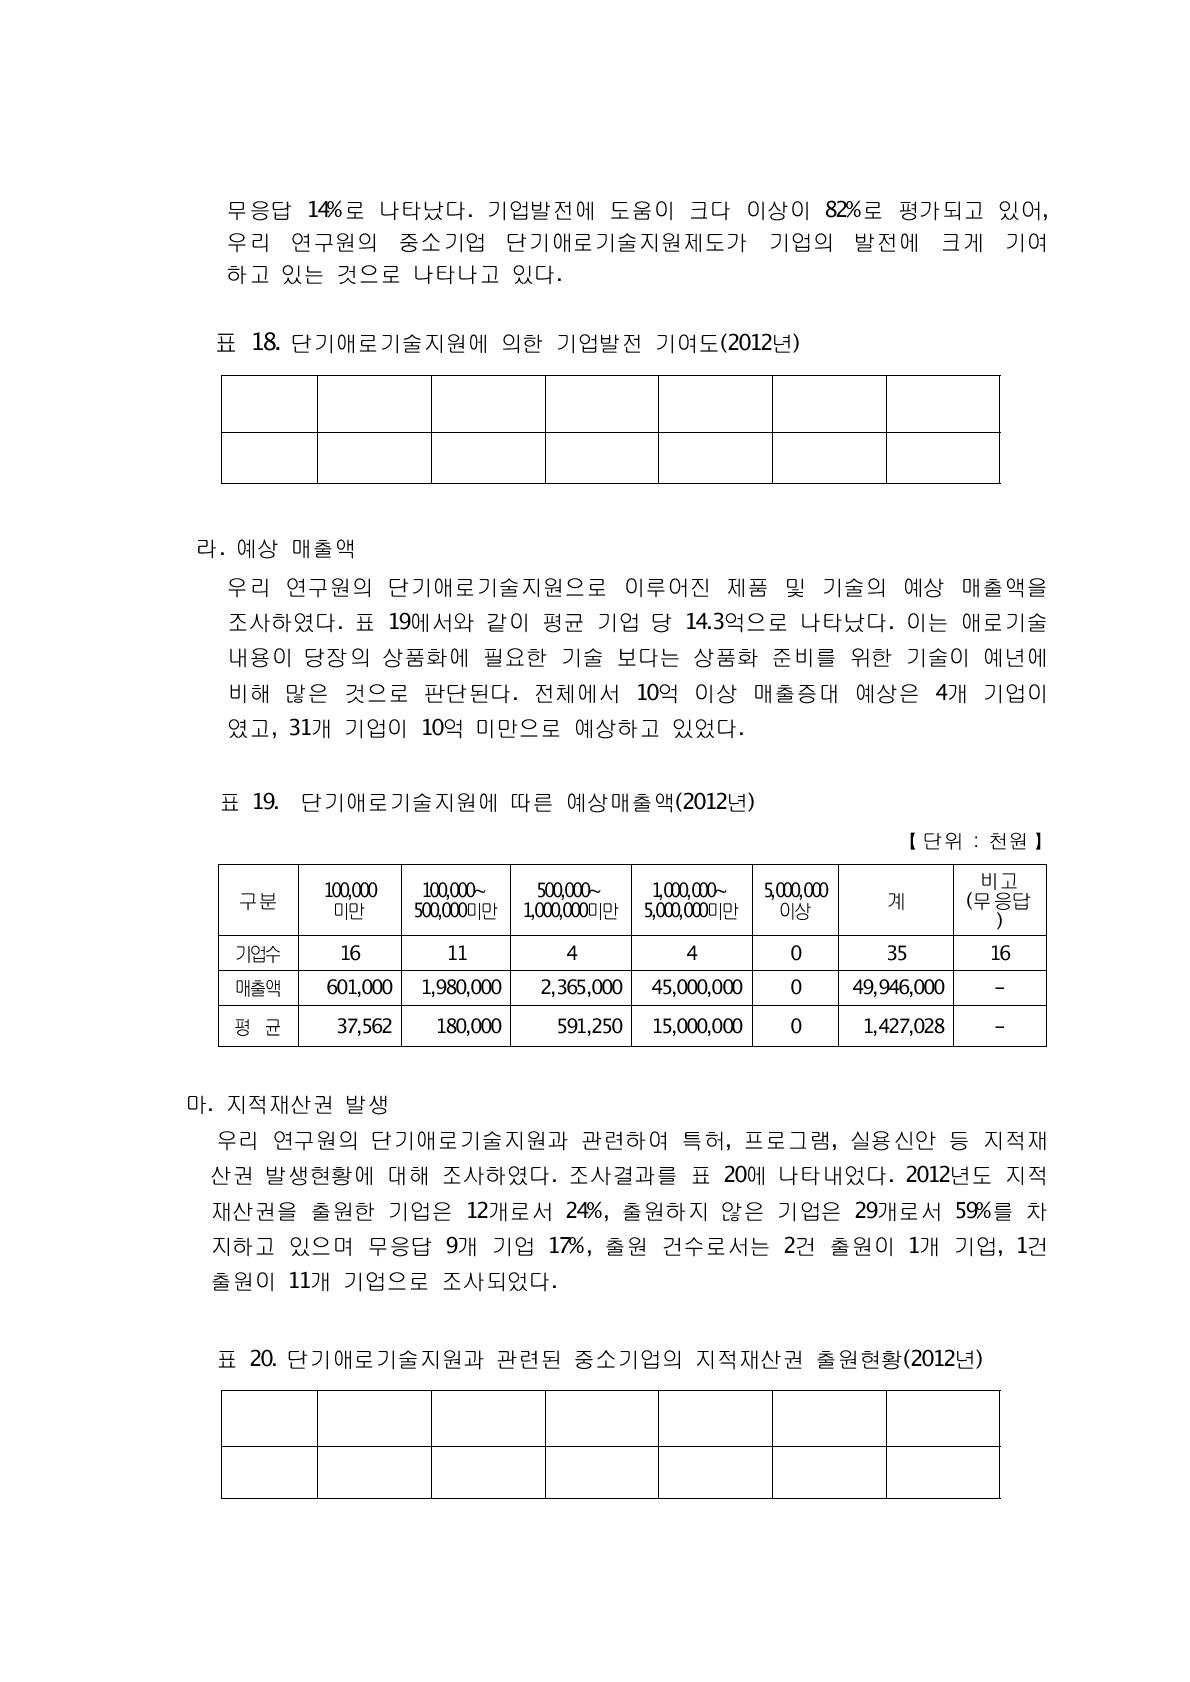 단기애로기술지원과 관련된 중소기업의 지적재산권 출원현황(2012년)